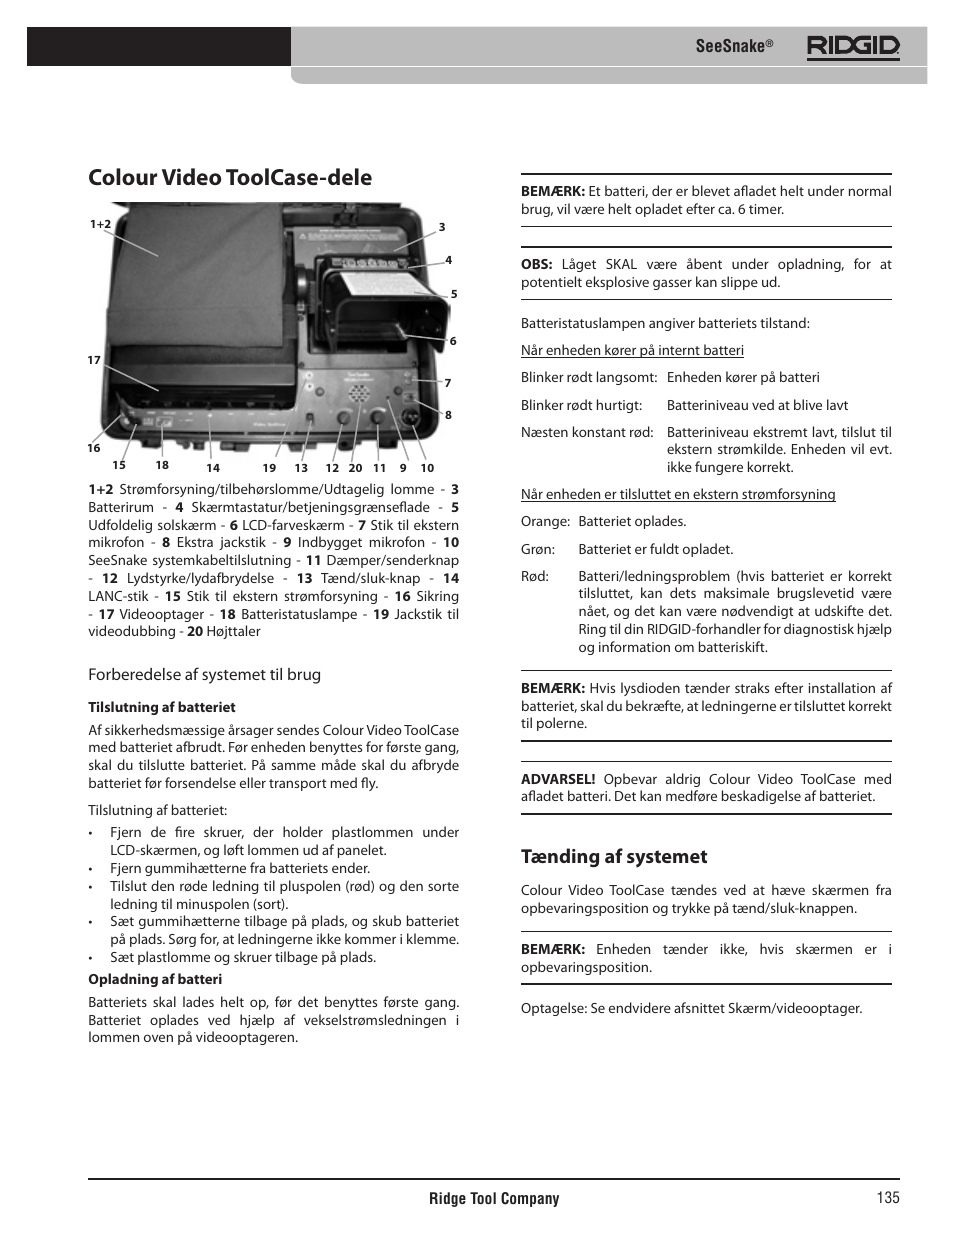 Colour video toolcase-dele, Tænding af systemet | RIDGID SeeSnake User  Manual | Page 136 / 302